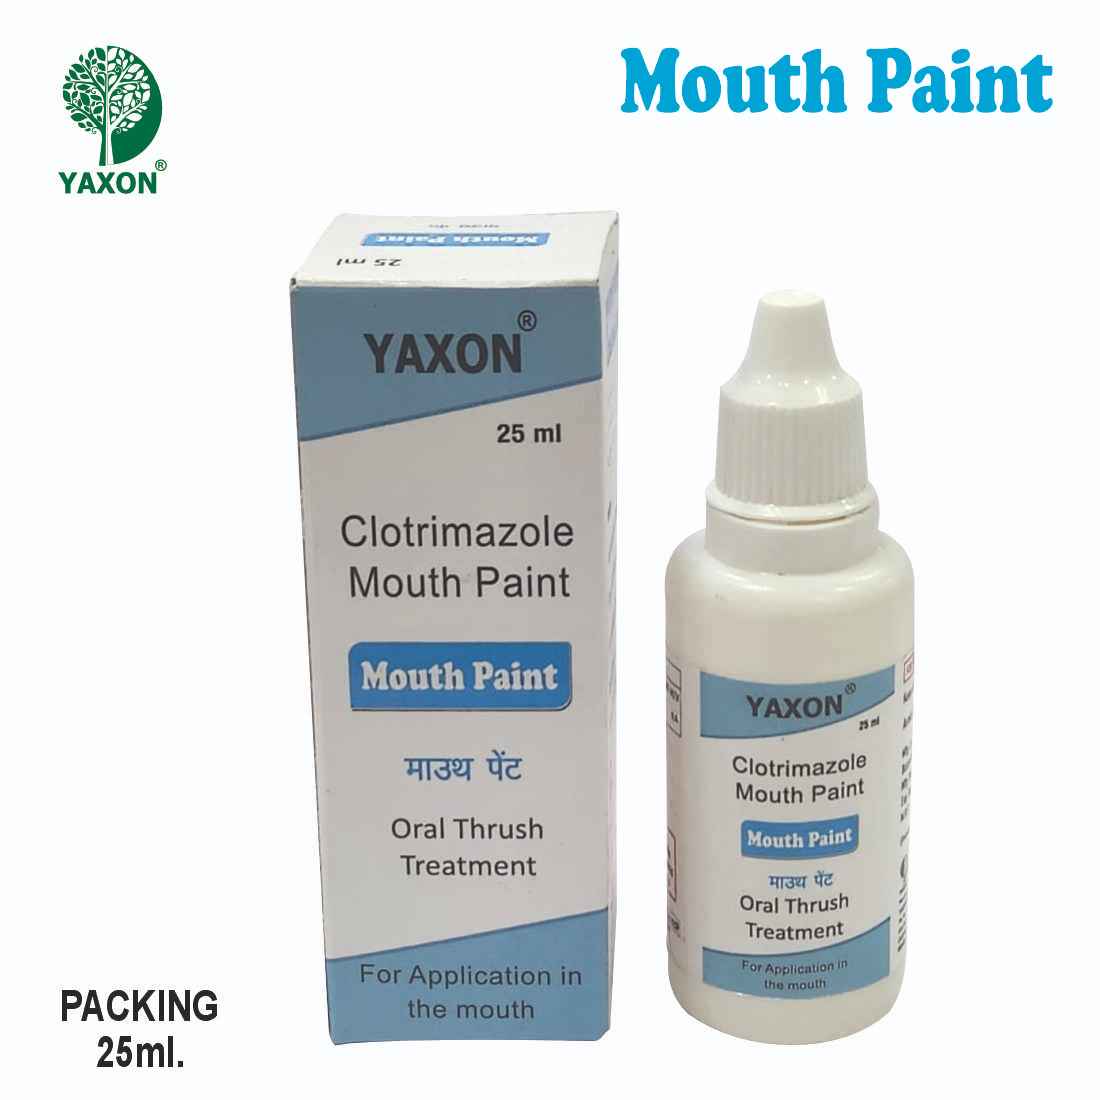 YAXON Clotrimazole Mouth Paint